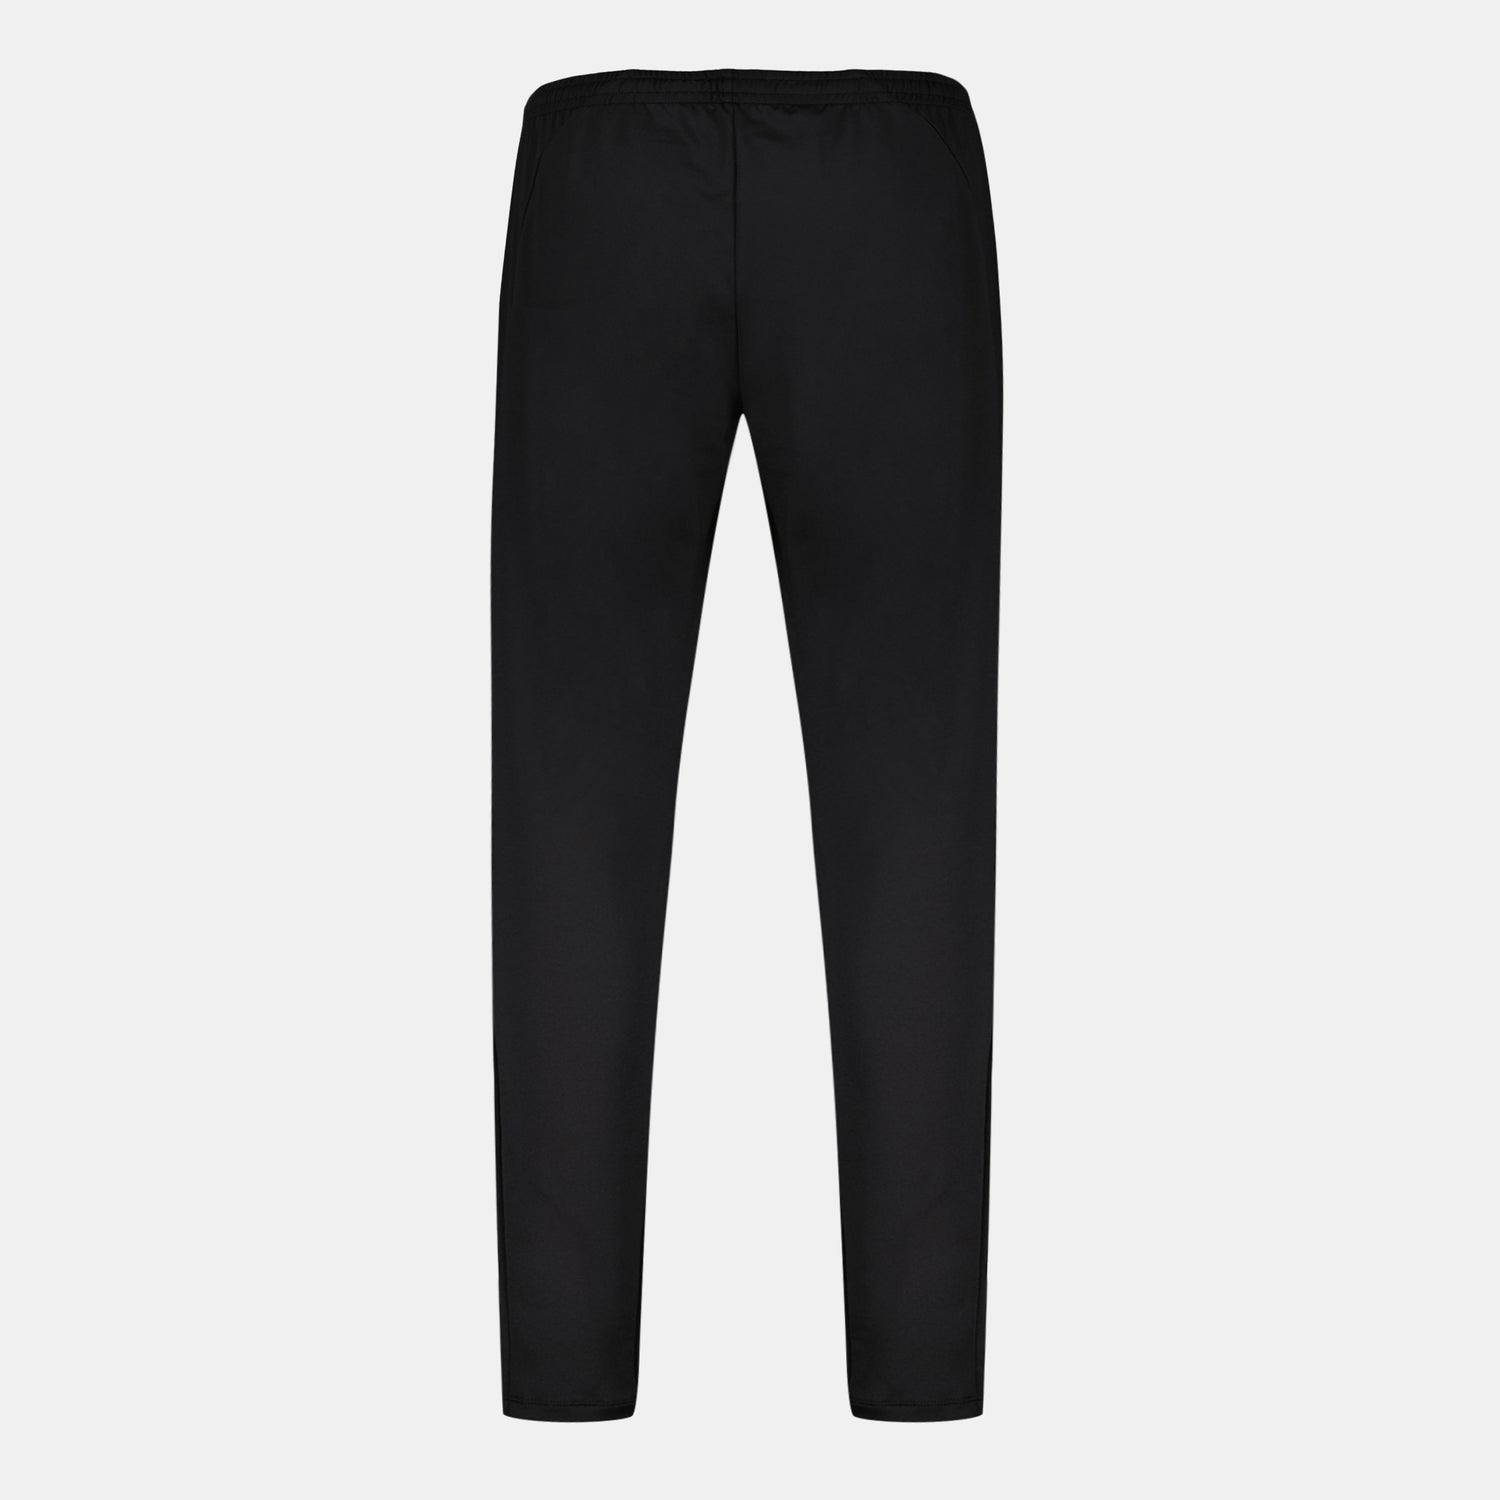 2321090-TRAINING LF Pant Carotte N°1 W black | Pantalon de sport coupe carotte Femme